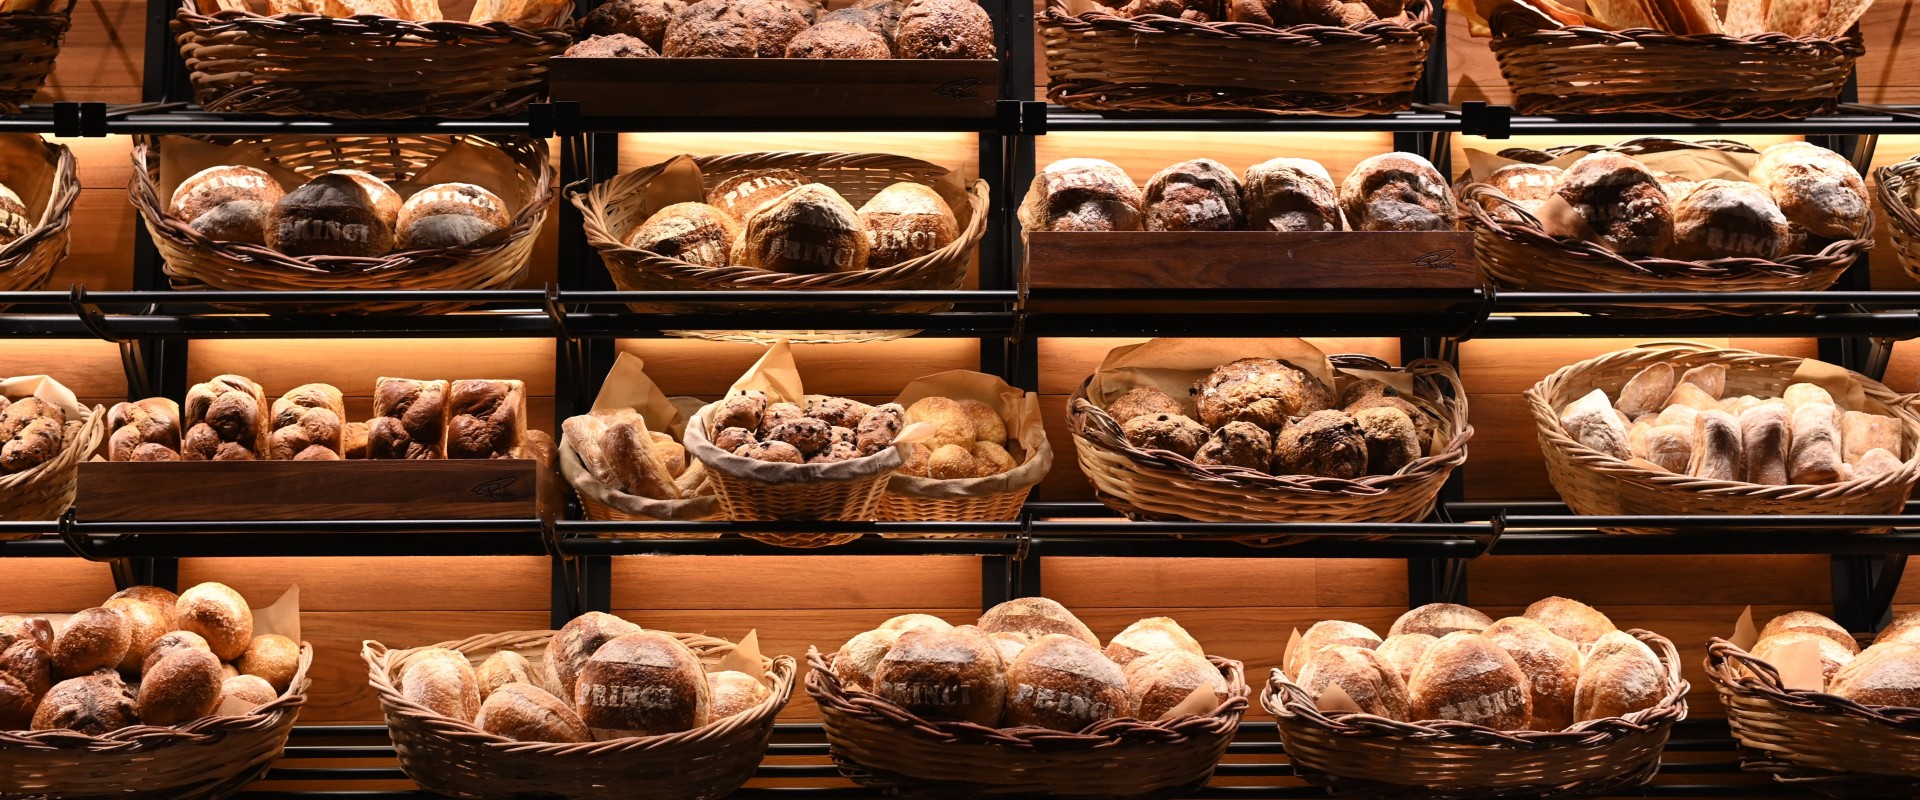 7 методов привлечения клиентов пекарни